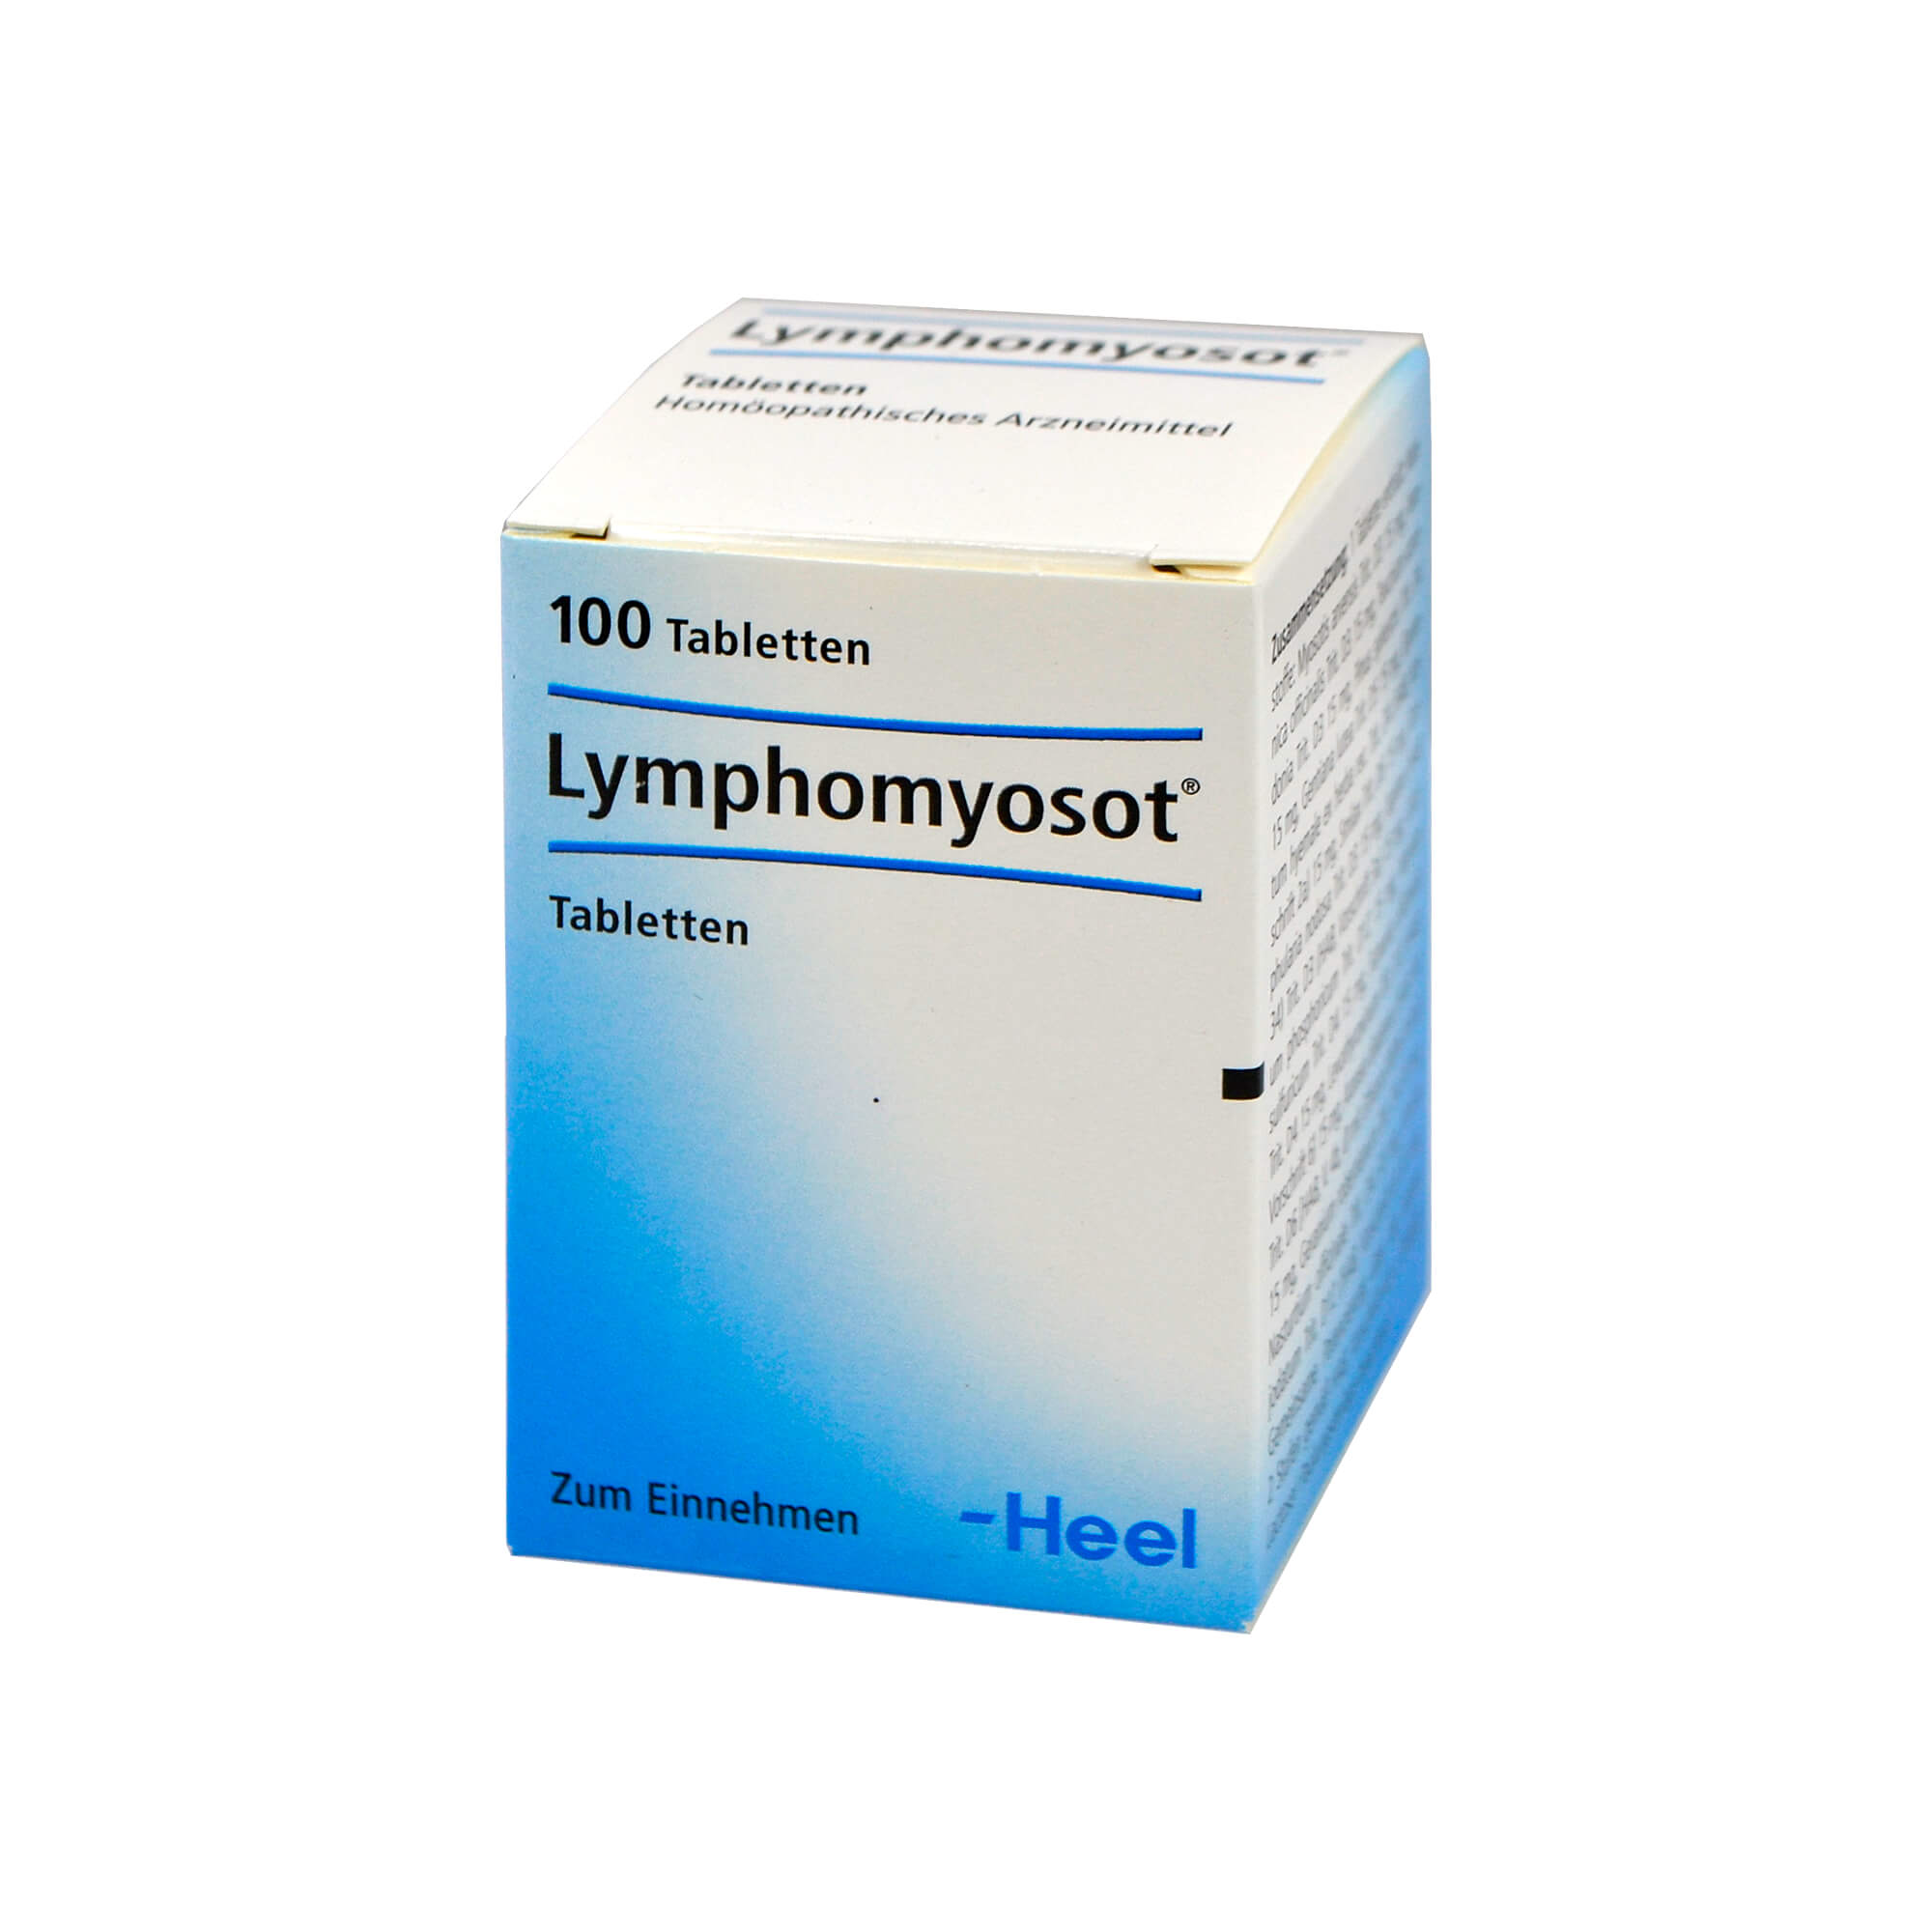 Лимфо таблетки. Lymphomyosot таблетки. Лимфомиозот турецкий аналог. Лимфомиозот. Препараты для лимфы.